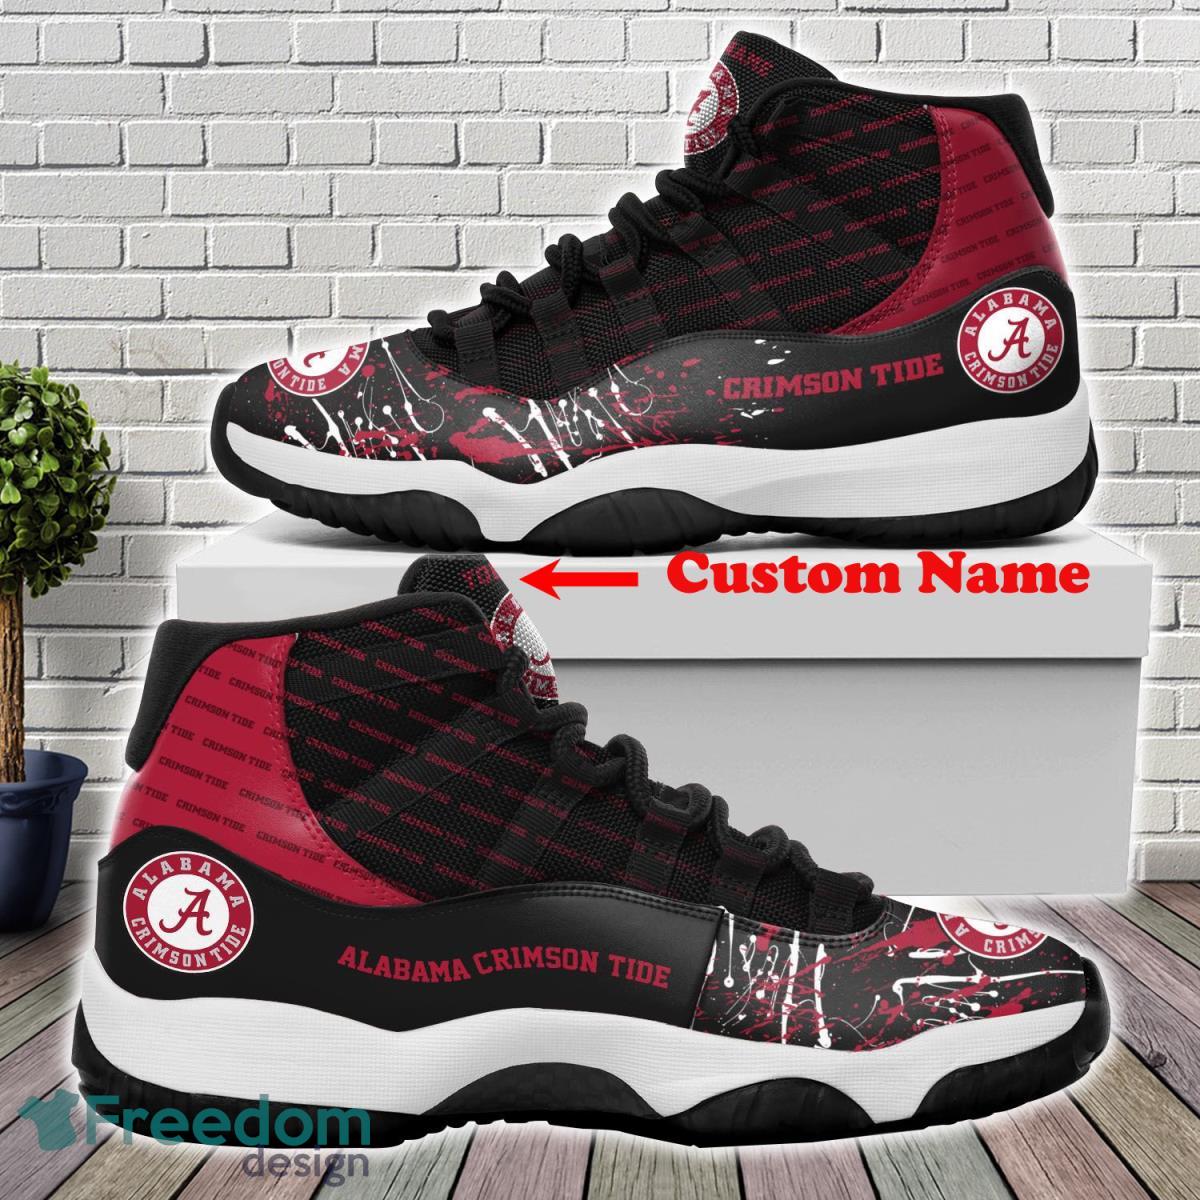 Alabama Crimson Tide Custom Name Air Jordan 11 Sneakers For Fans Product Photo 1